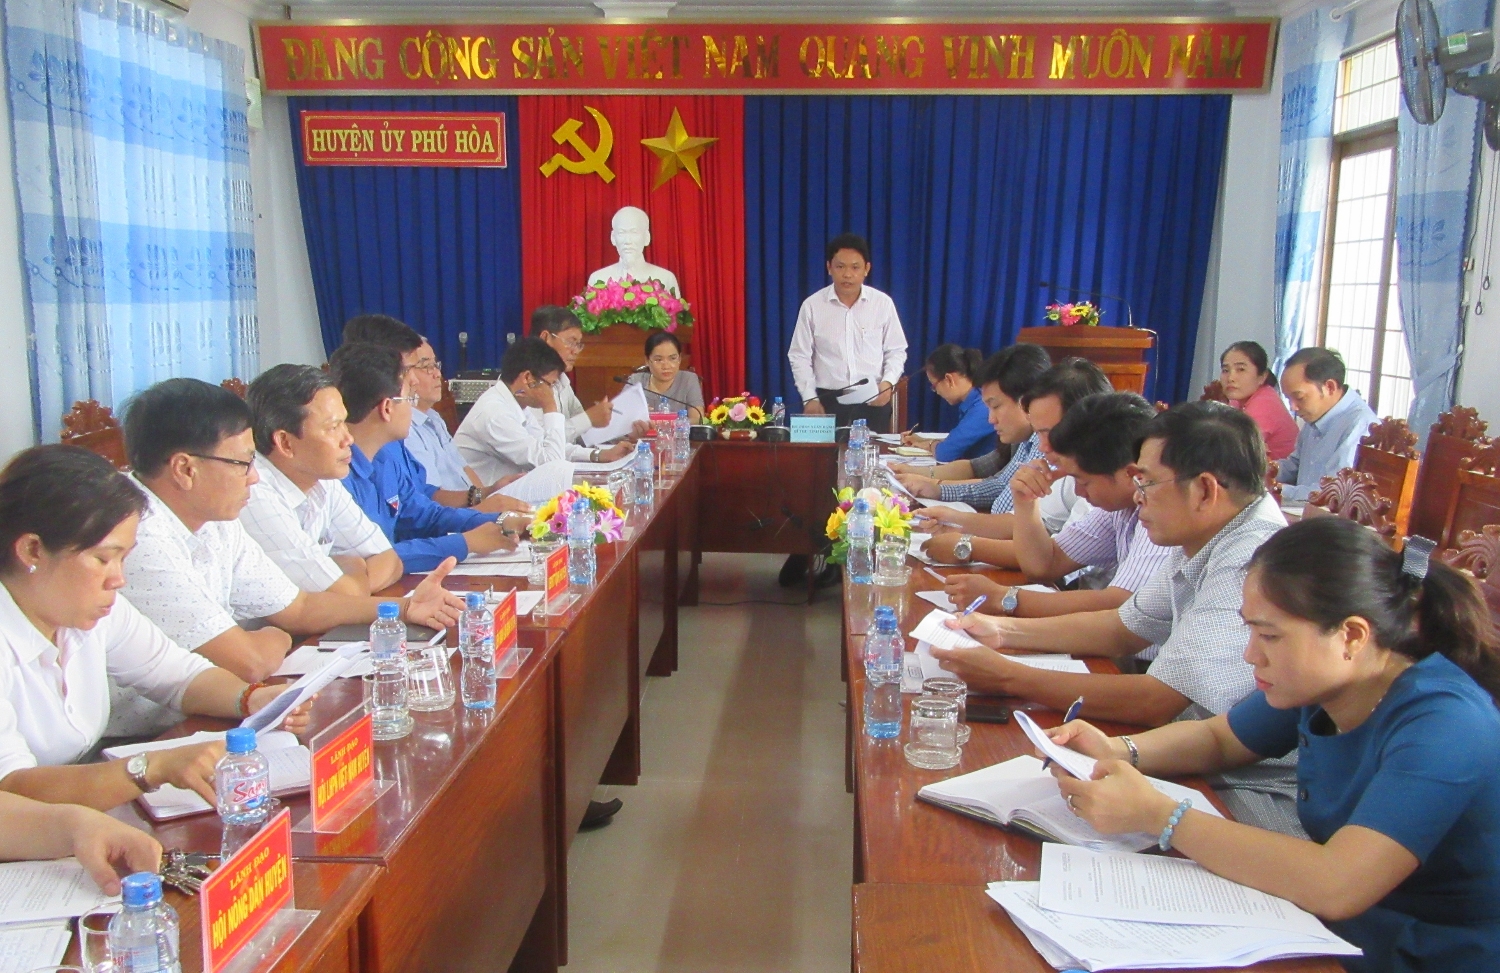 Đoàn giám sát làm việc với Lãnh đạo Huyện ủy Phú Hòa.